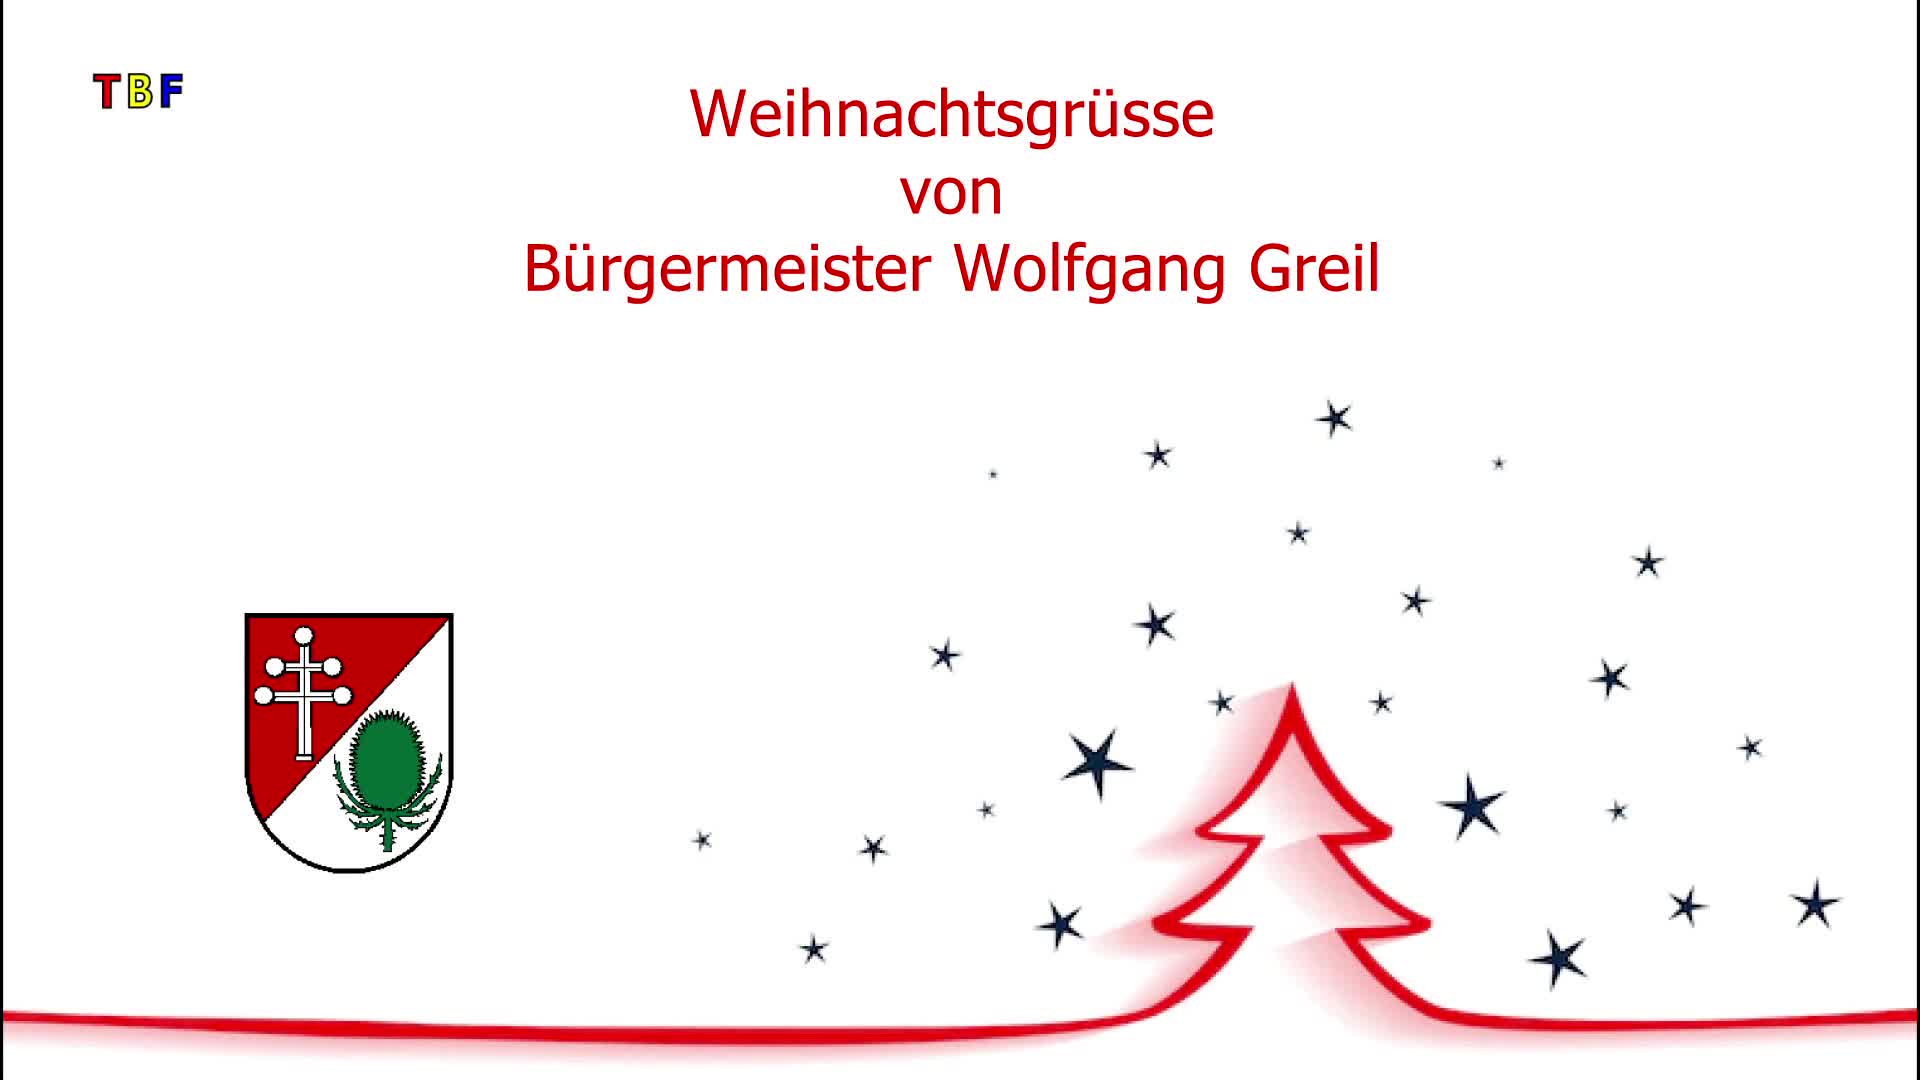 Weihnachtsgruesse des Katsdorfer Bürgermeisters Wolfgang Greil